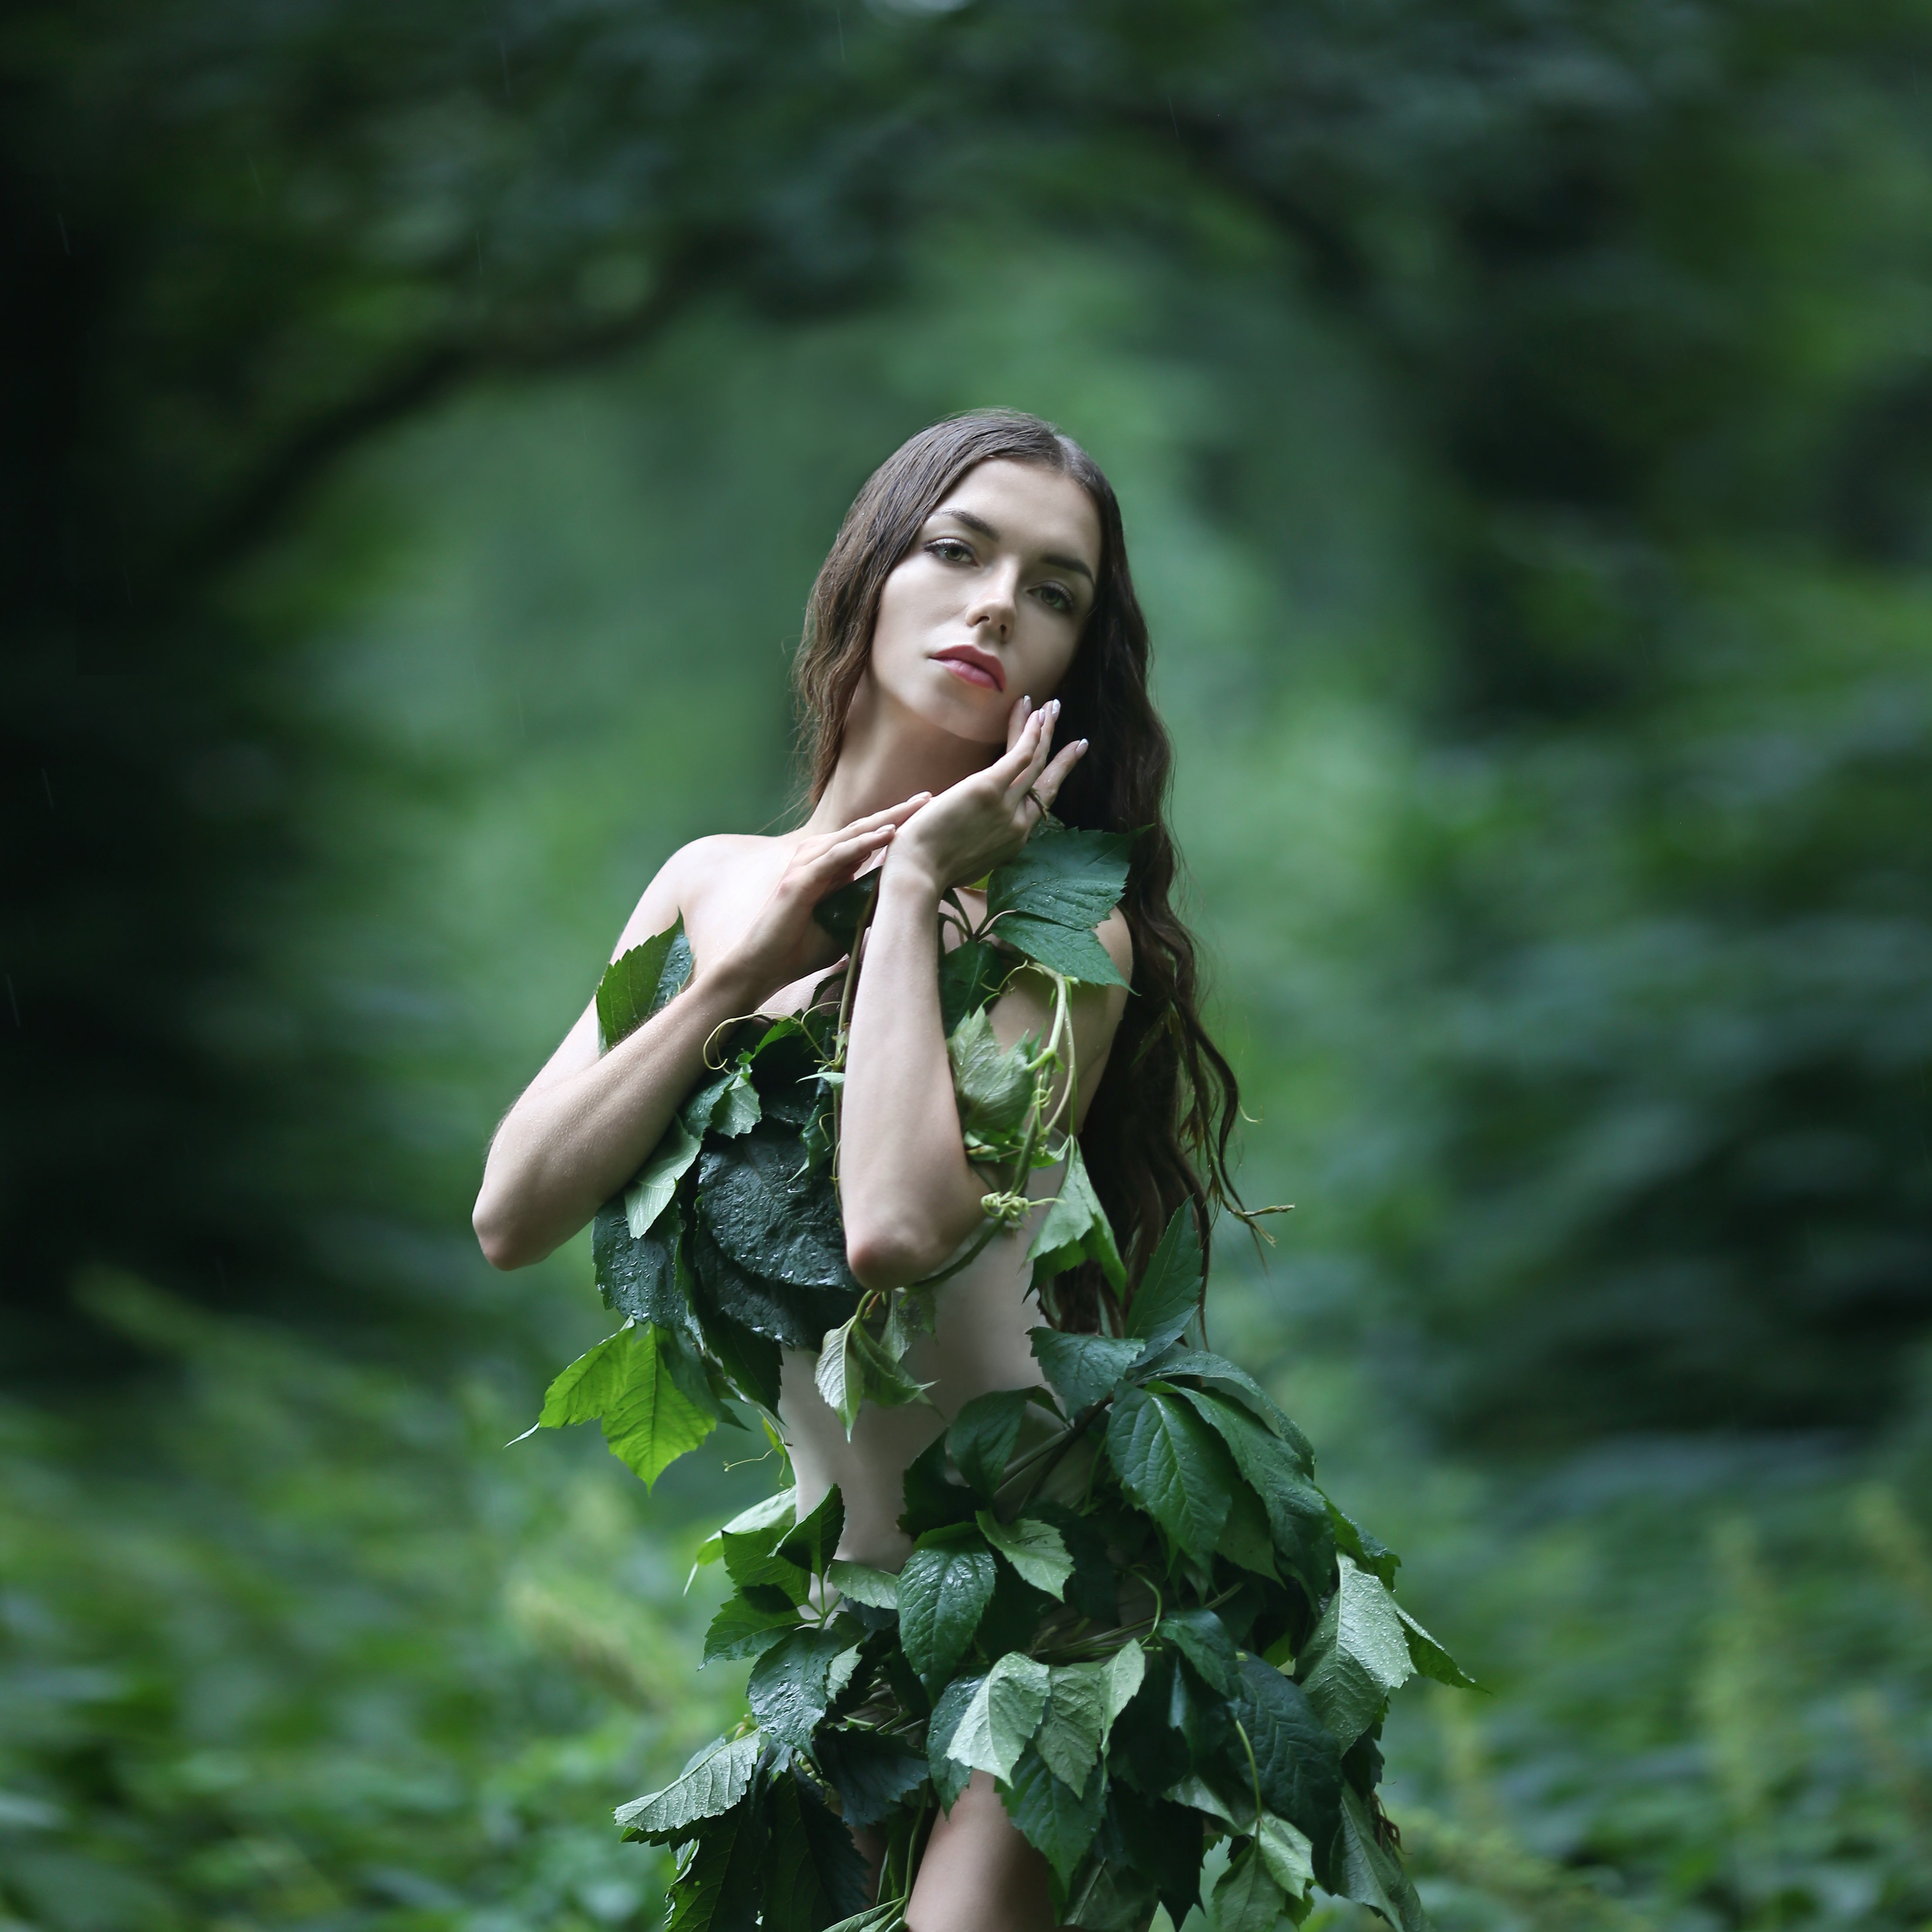 лесная нимфа, девушка в лесу, заросли, девушка в зарослях, Ирина Голубятникова